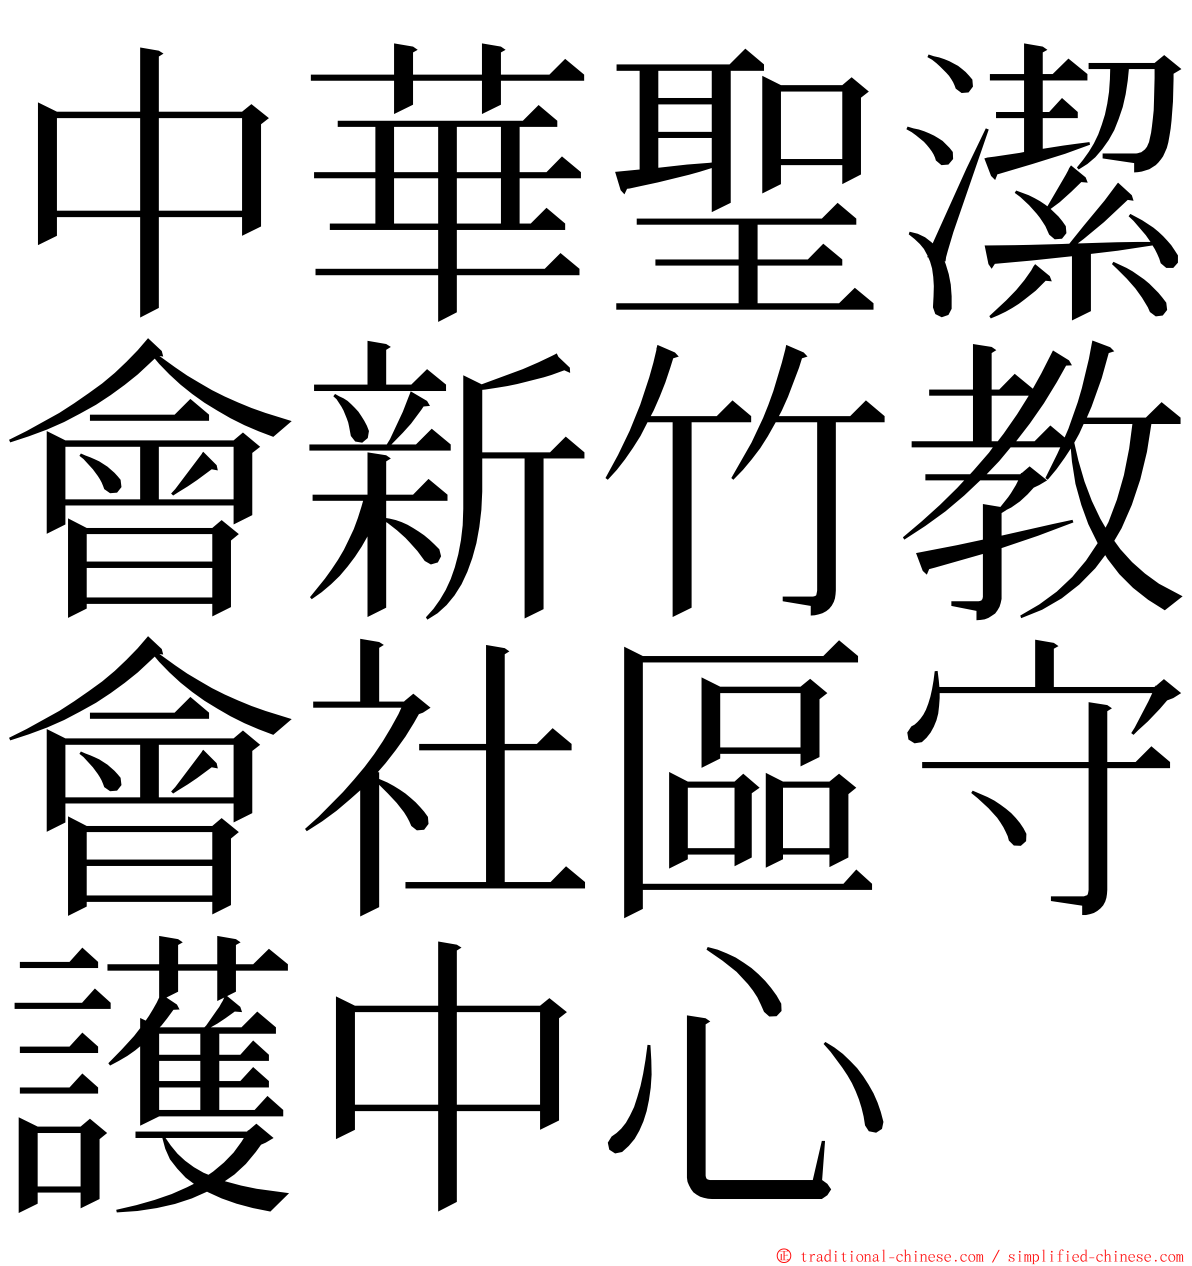 中華聖潔會新竹教會社區守護中心 ming font